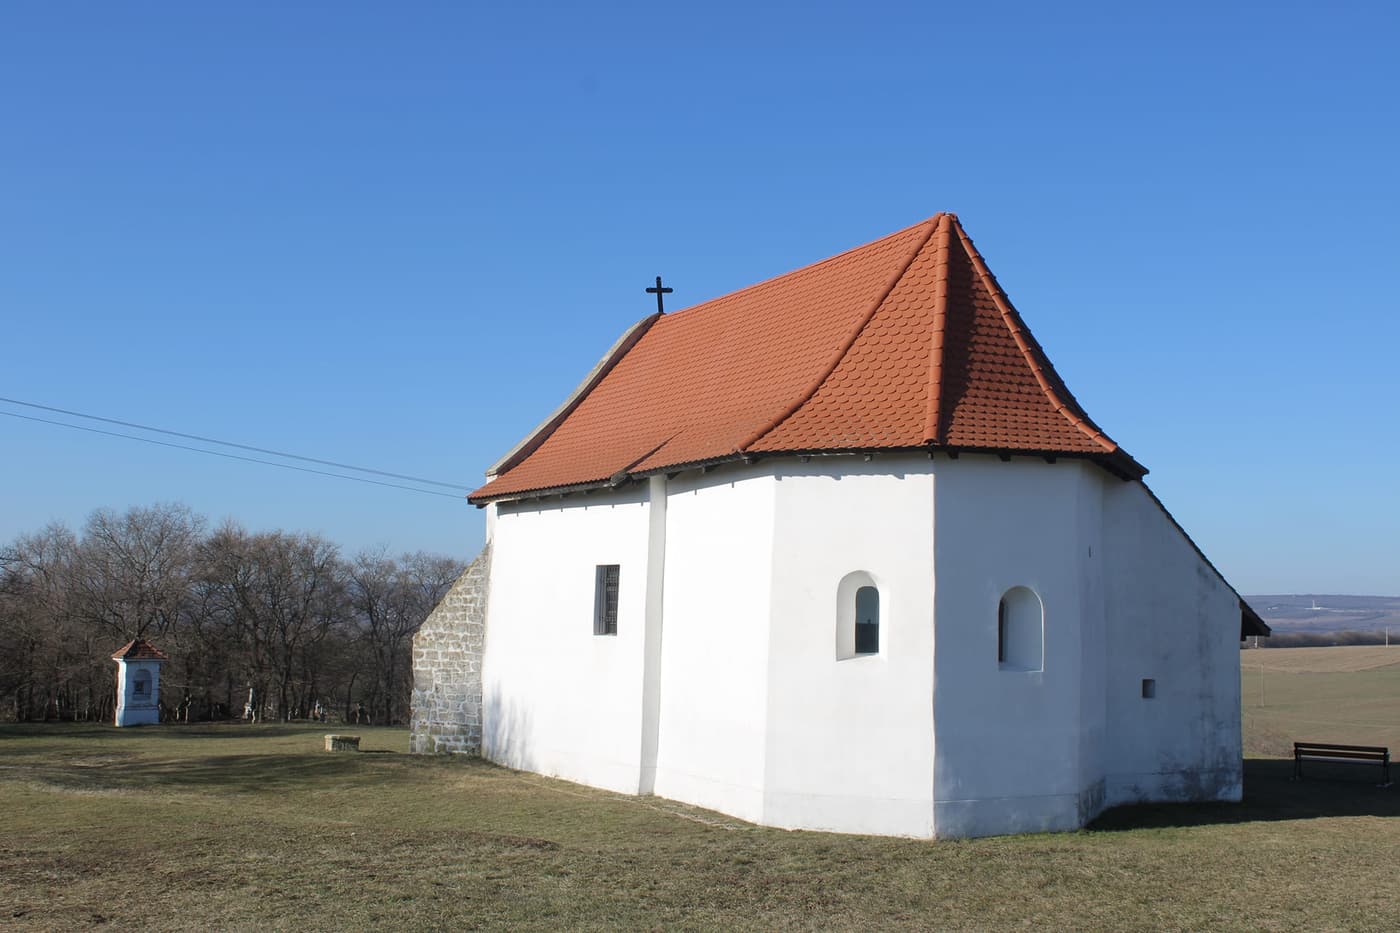 Budajenő, eine charmante Siedlung im Schambecker-Becken